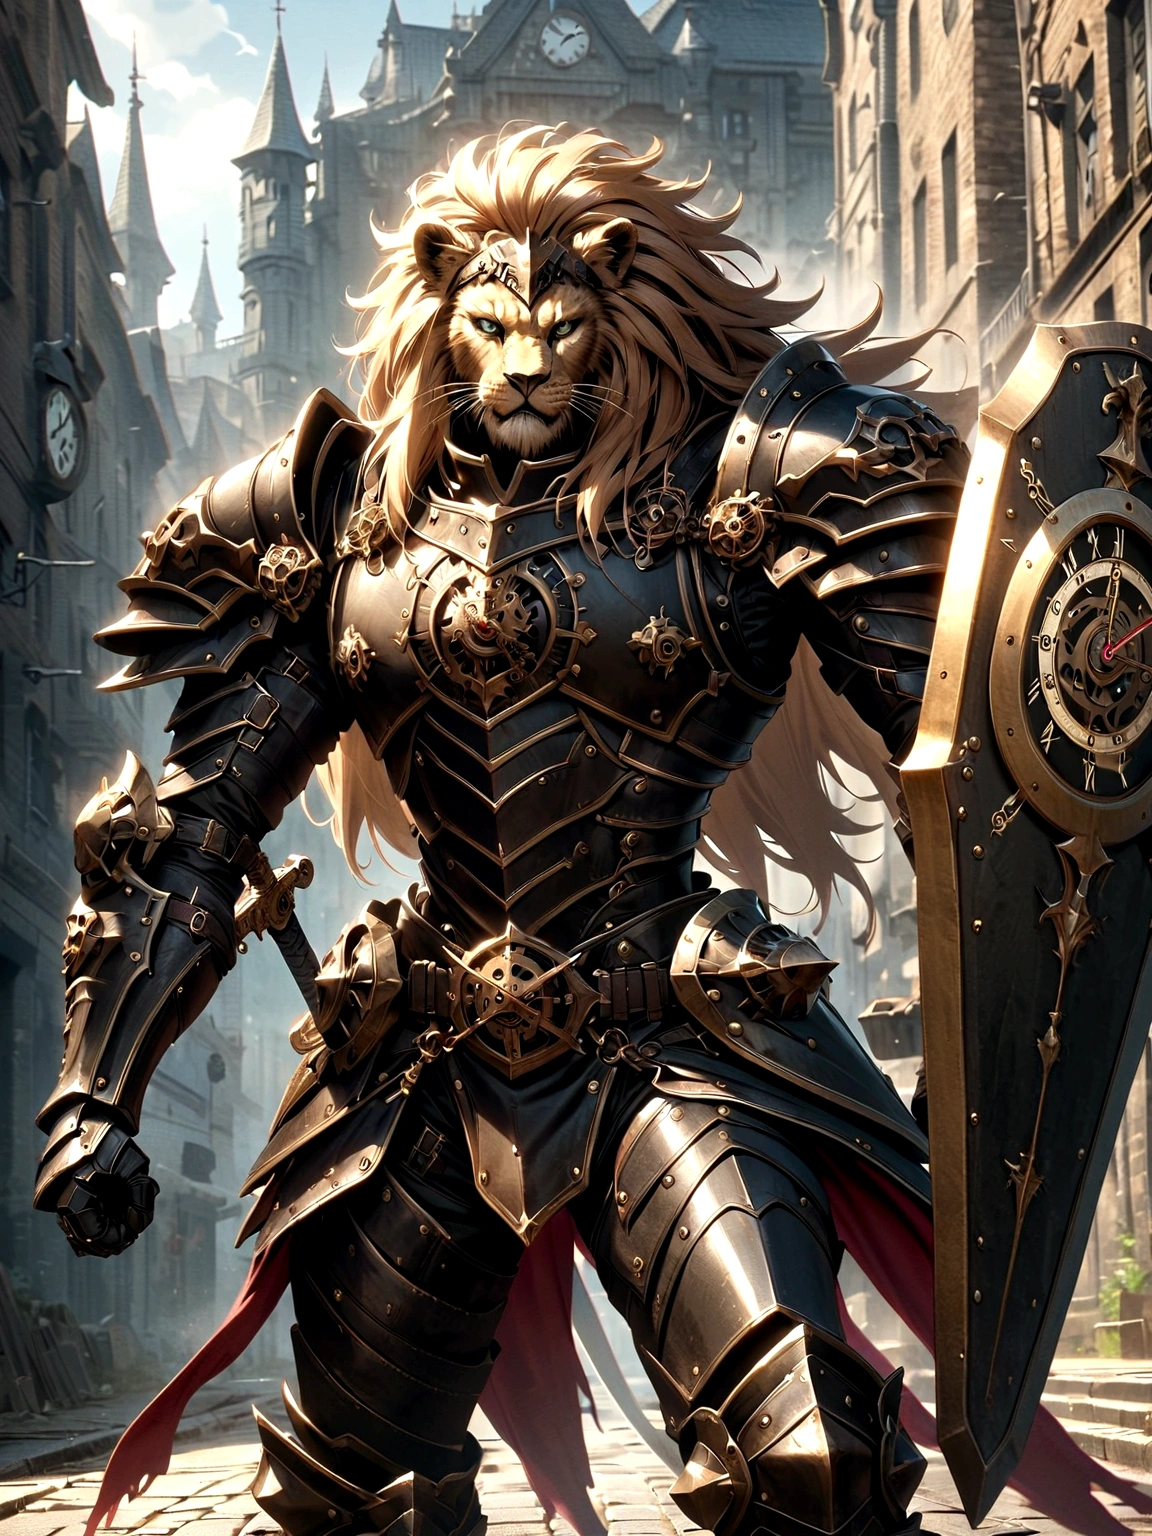 戦闘服を着た獅子騎士, 路上で, 黒い鎧, 時計のデザイン, ブラックライオンマン, 黒色の鎧, 剣と盾